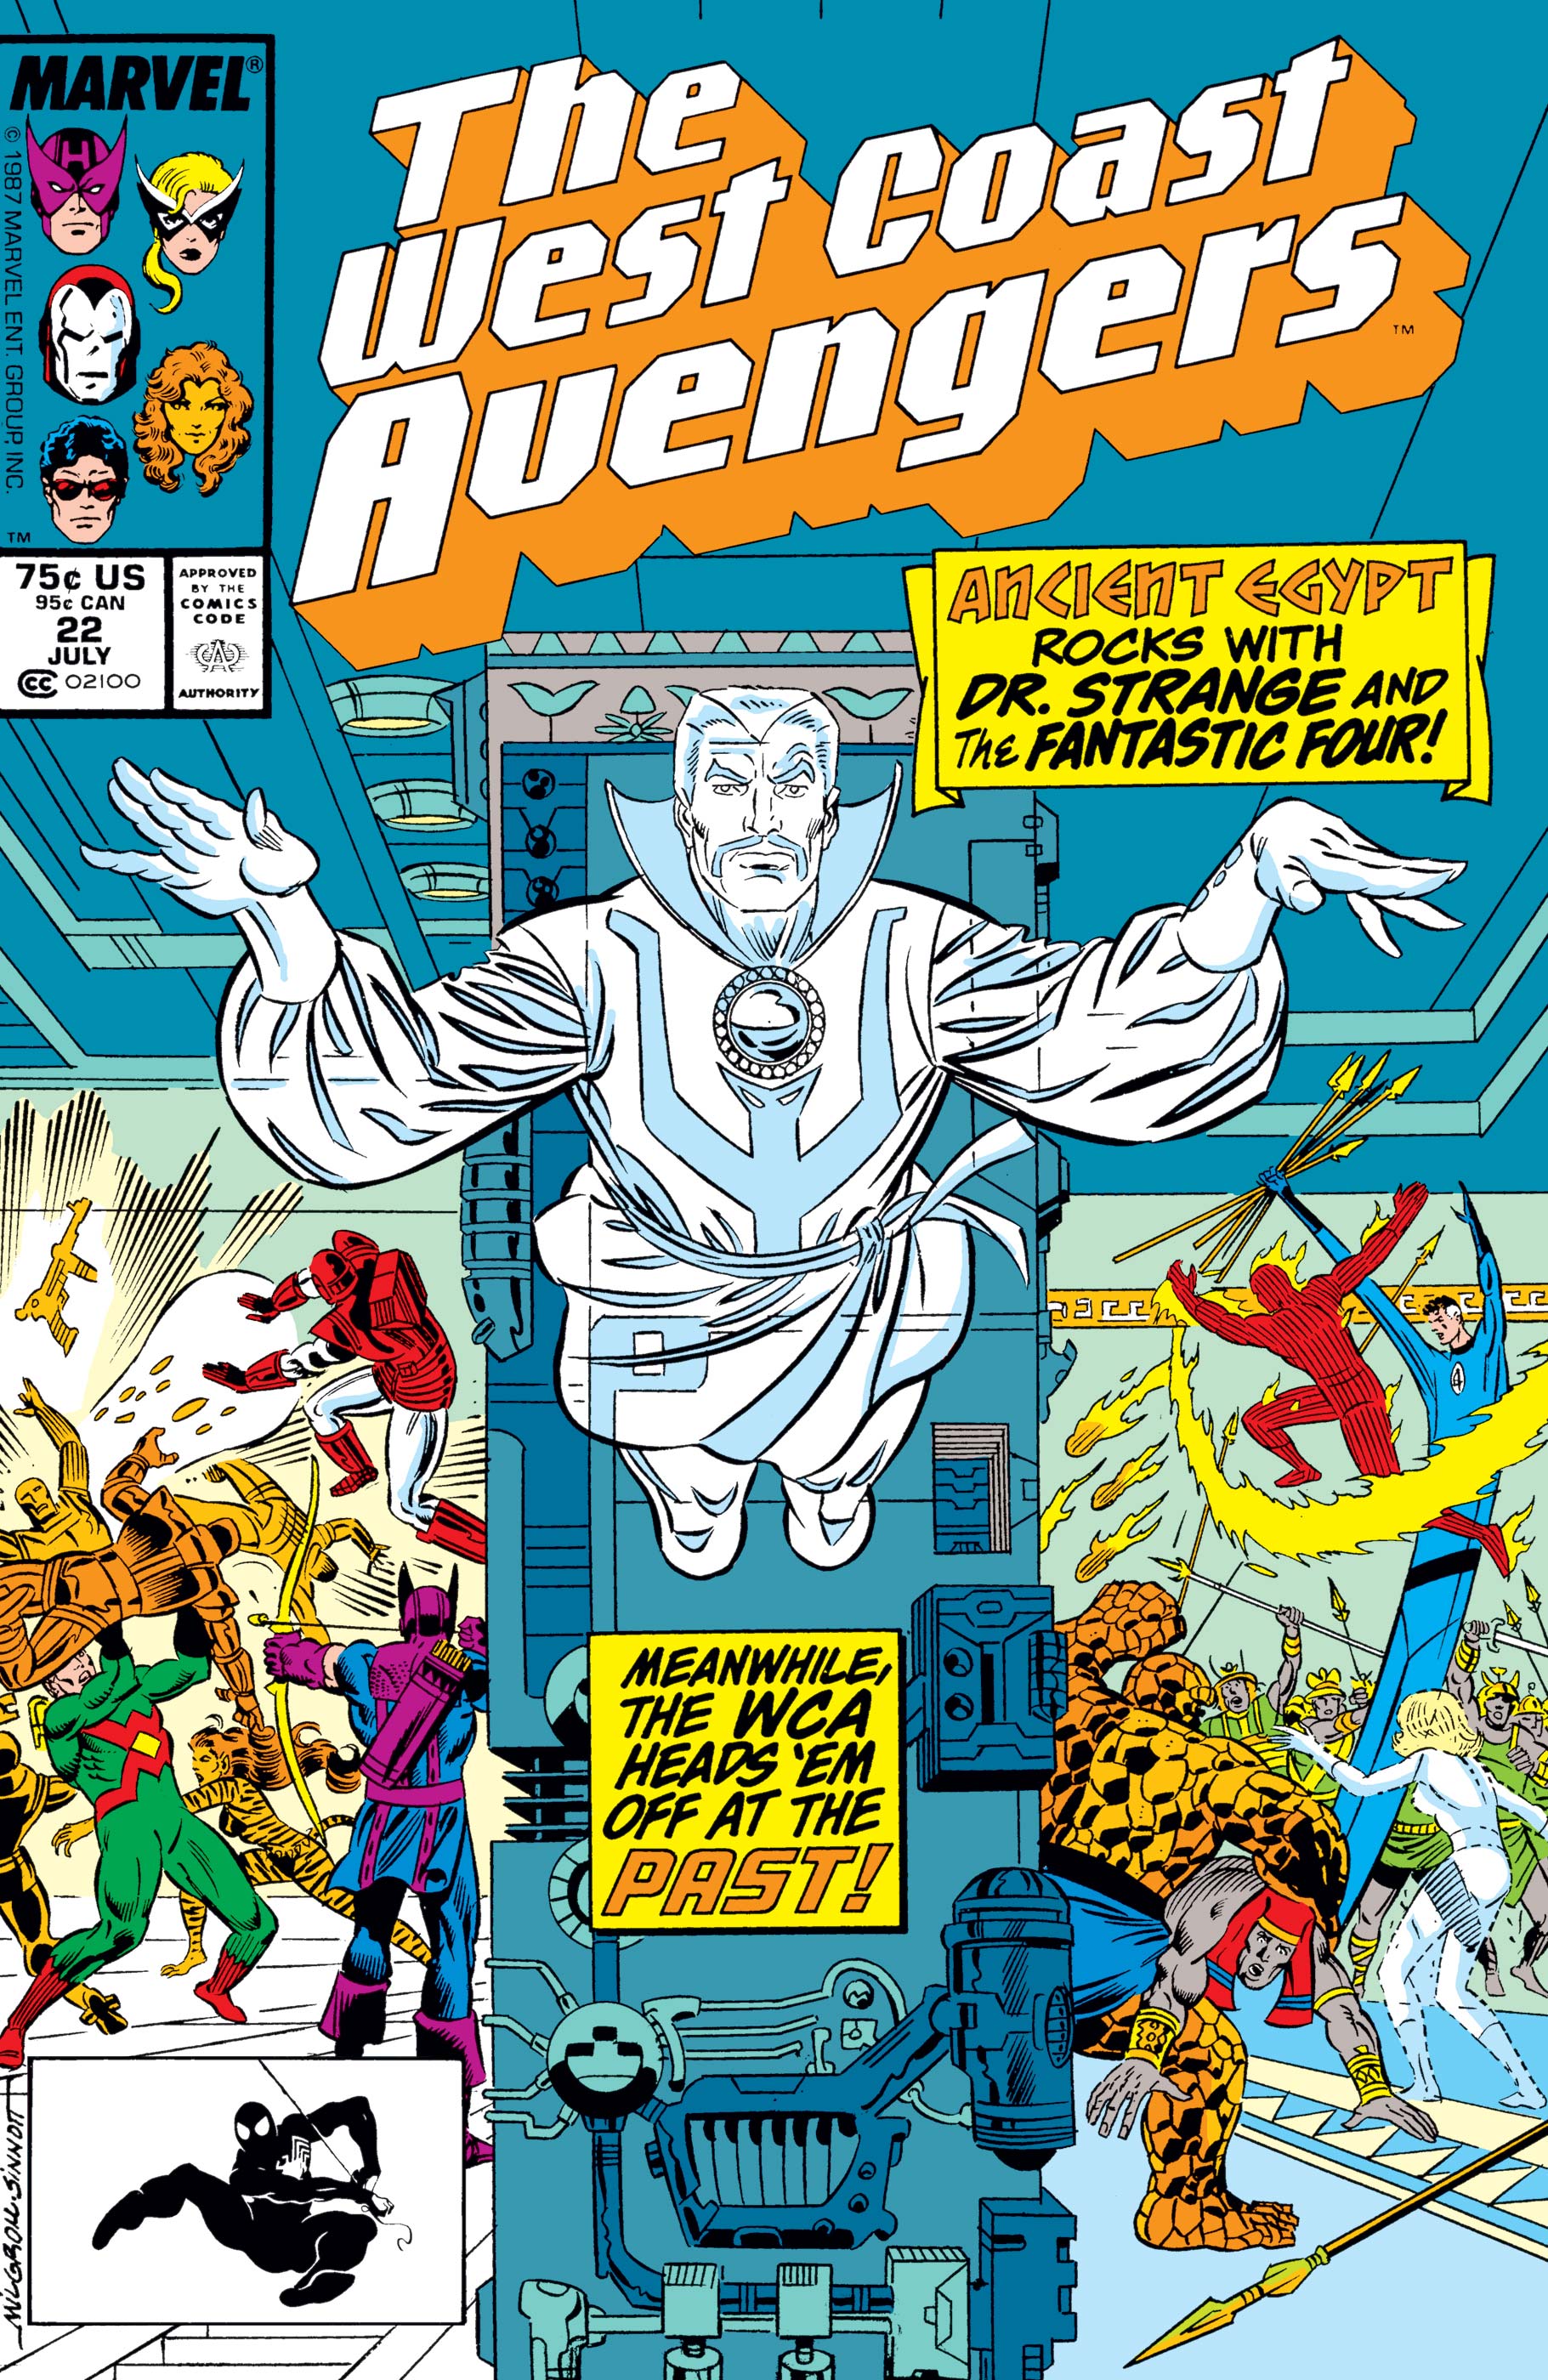 West Coast Avengers (1985) #22